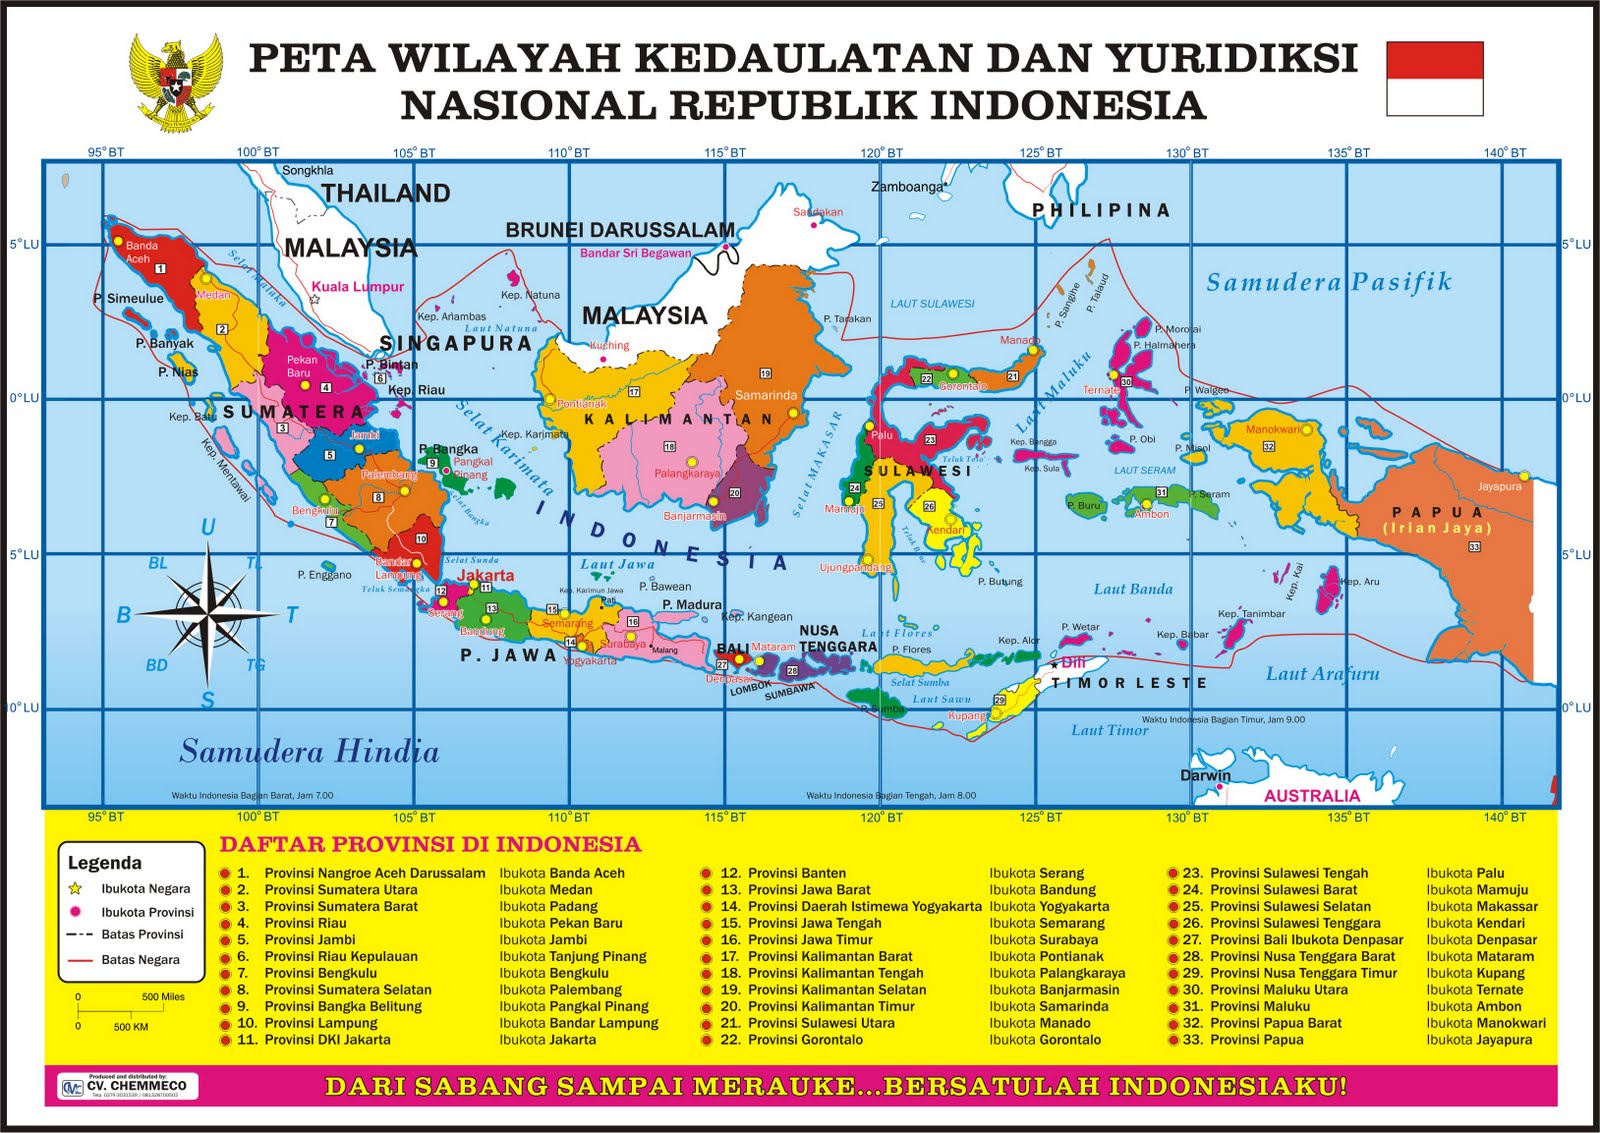 Peta Wilayah Kedaulatan dan Yuridiksi Republik Indonesia 